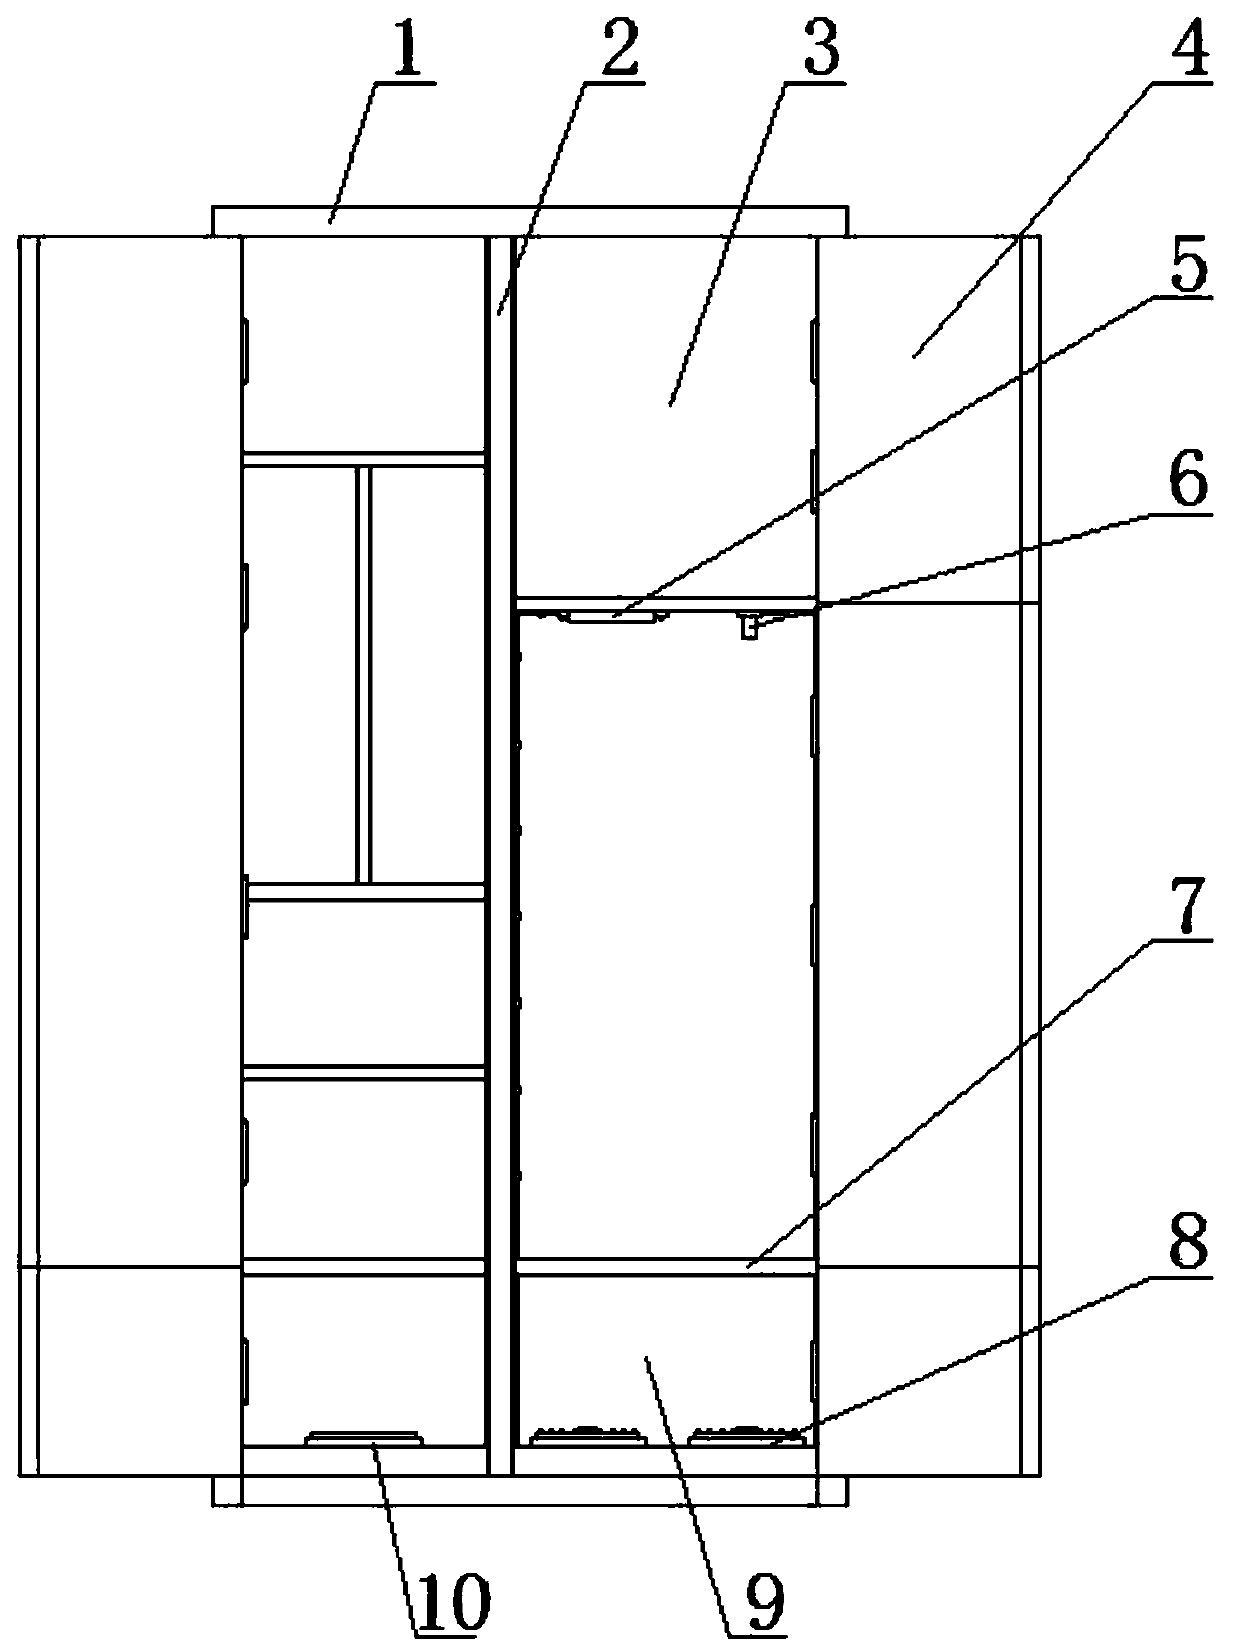 Multi-door classified arrangement electrical tool cabinet